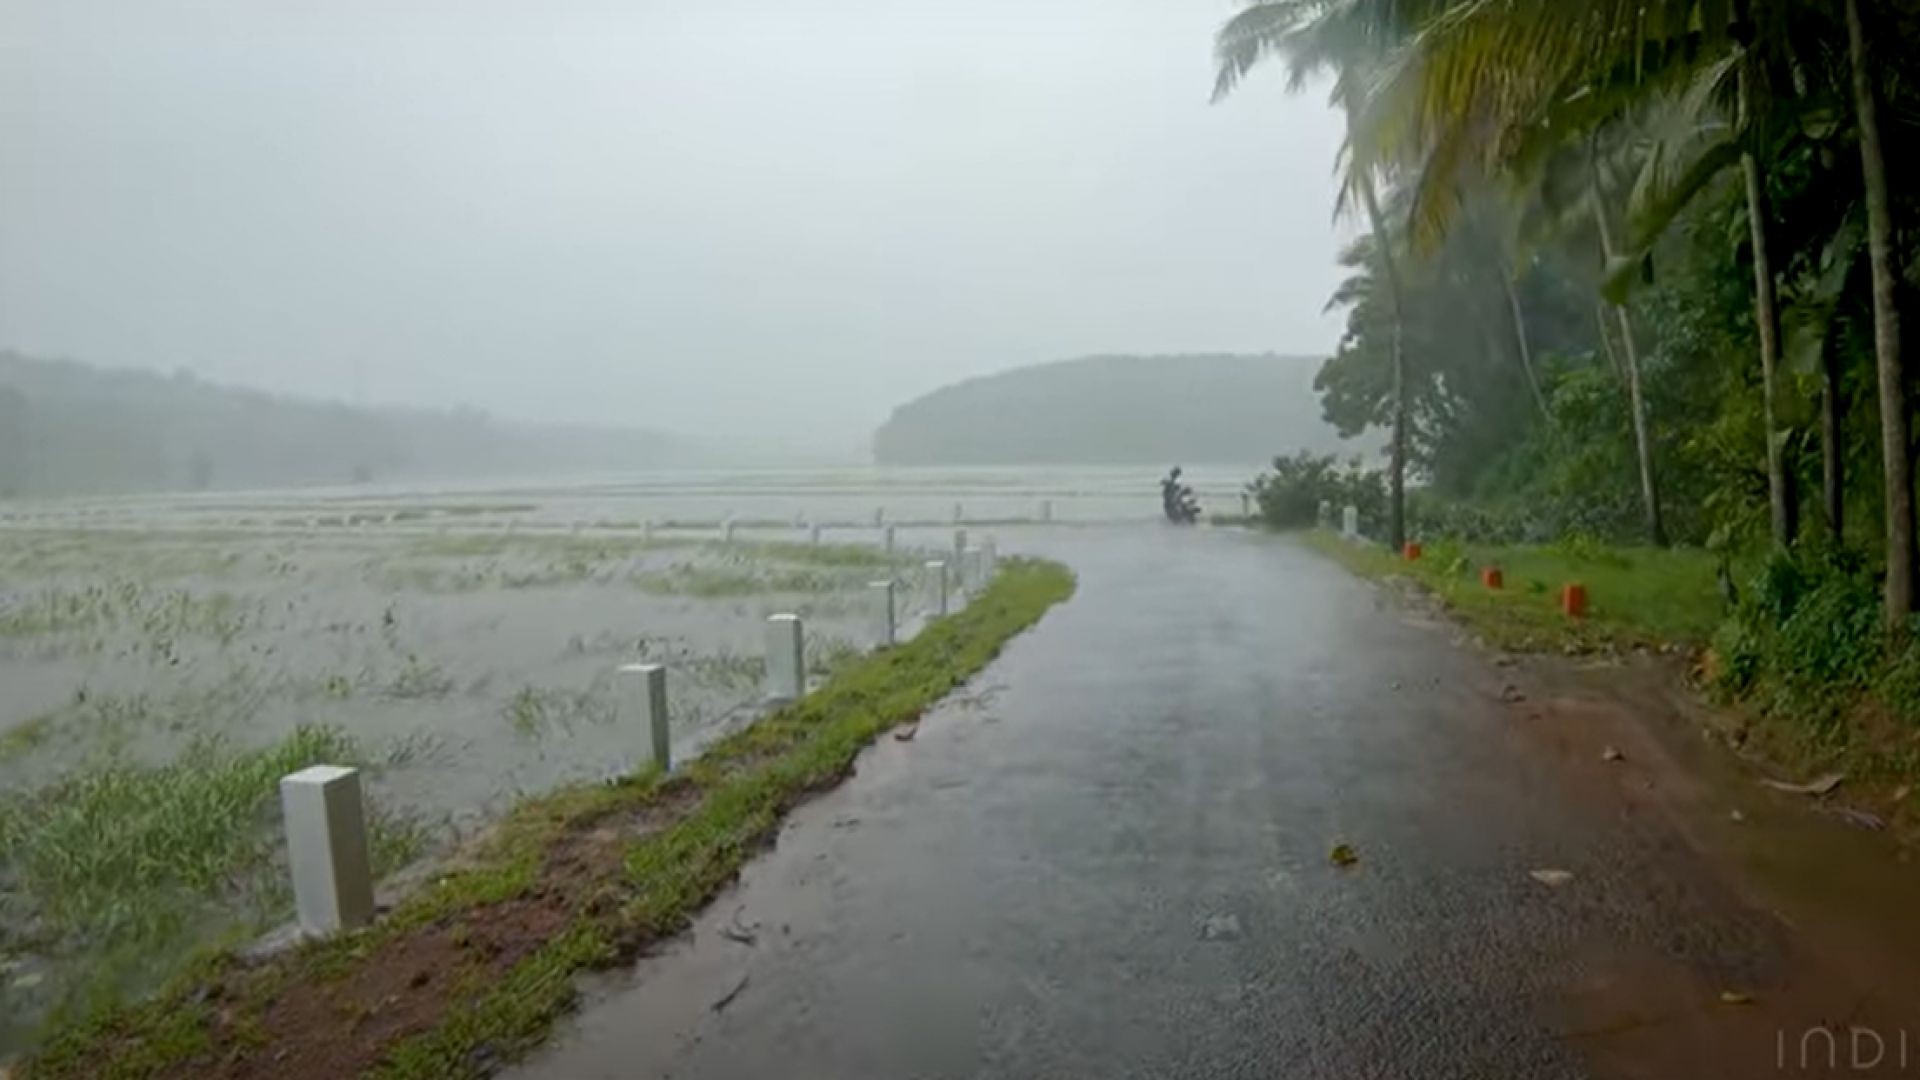 جمال صوت المطر - أصوات طبيعية Walking in Heavy Rain in paddy fields | Relaxing Kerala Monsoon rain